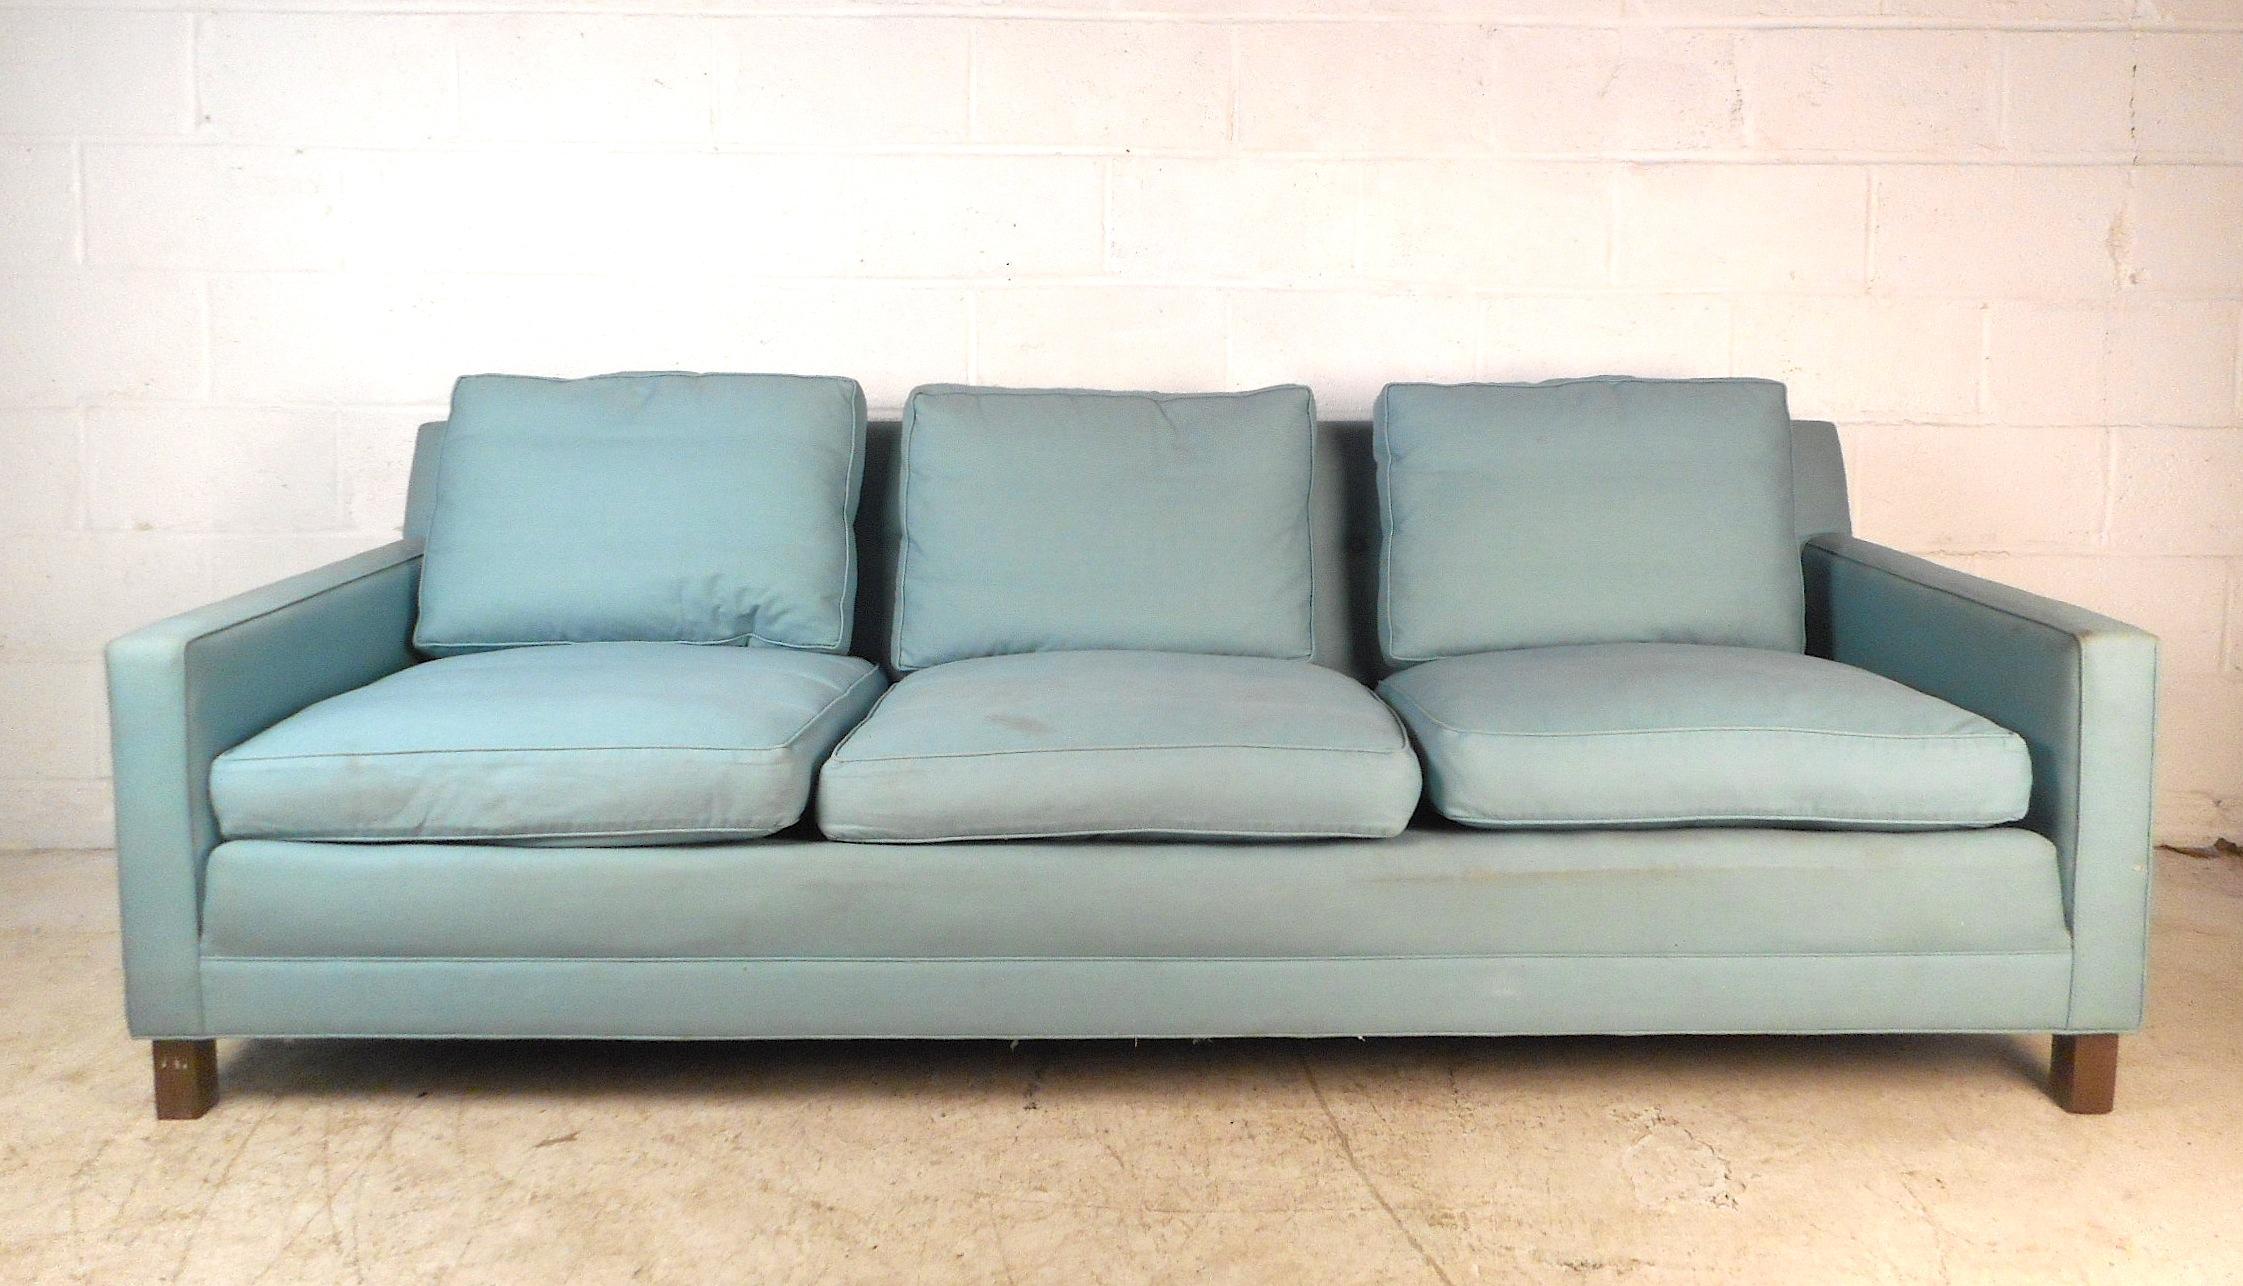 Mid-Century Modern Sofa by Dunbar (Moderne der Mitte des Jahrhunderts)